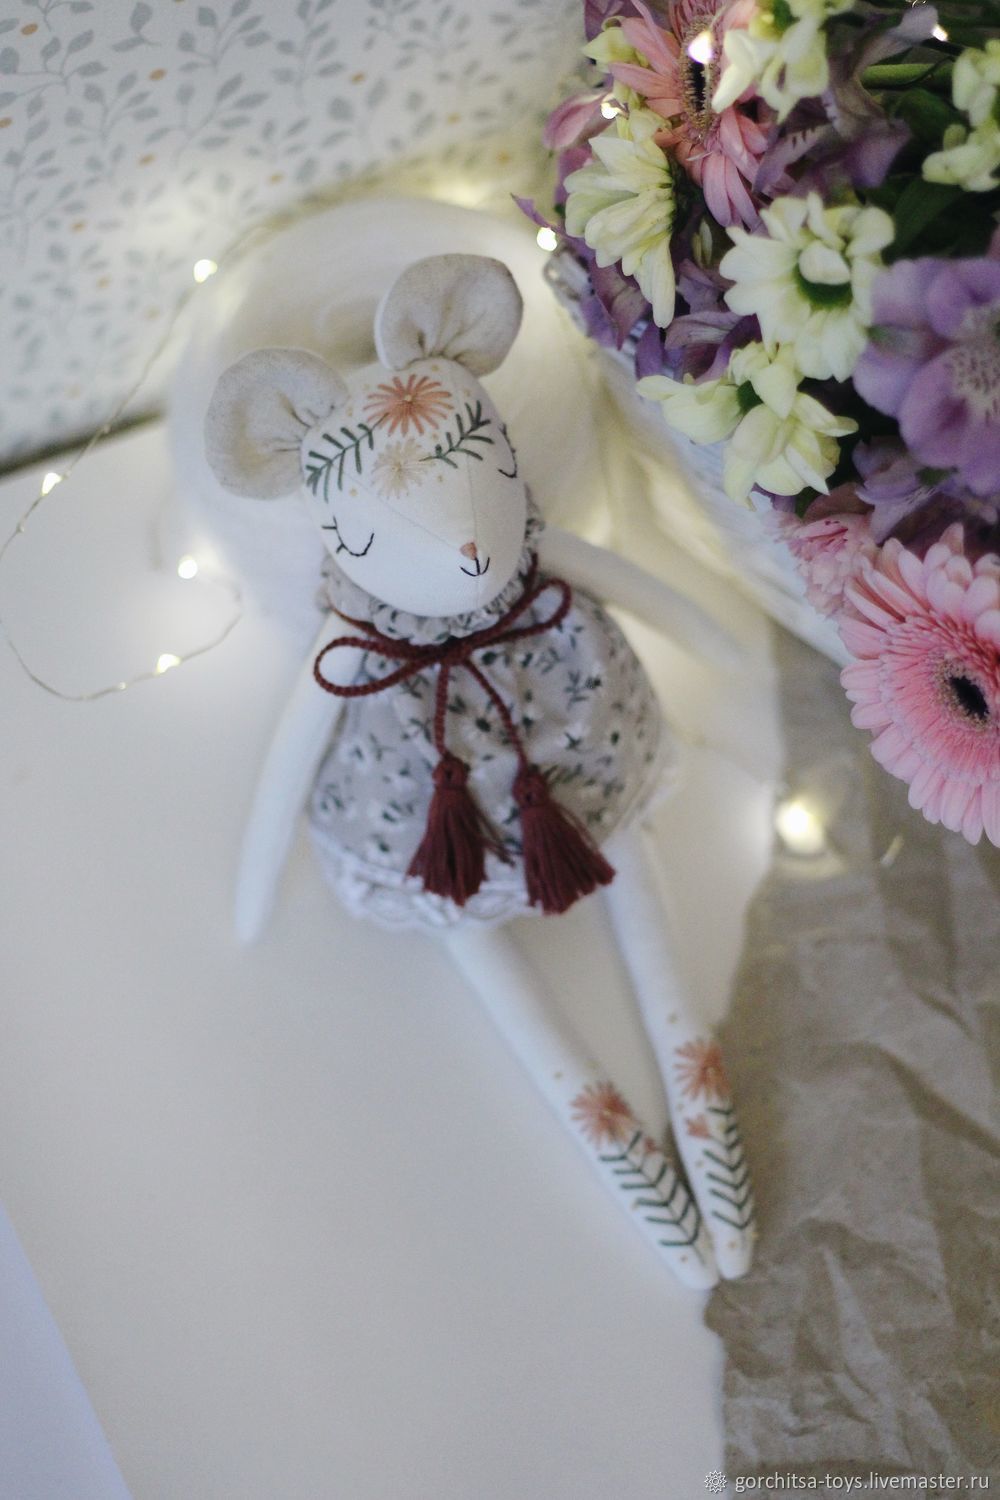  Мышка белая из льна в сером платье цветочек, Мягкие игрушки, Орел,  Фото №1